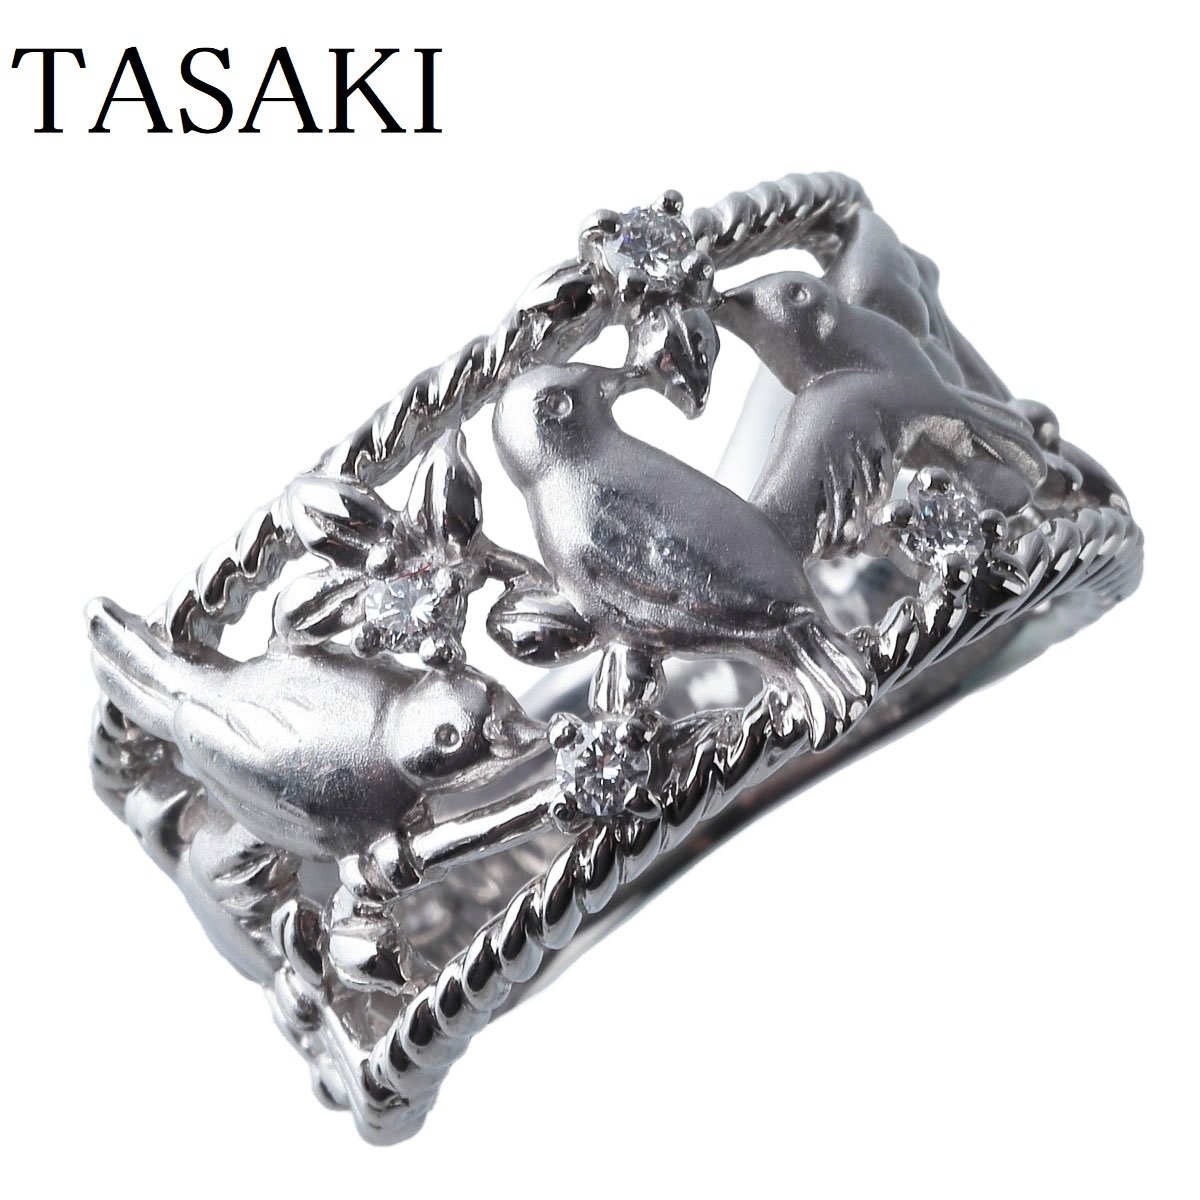 独特な店 鳥 Pt900 約14号 0.11ct ダイヤリング タサキ バード TASAKI